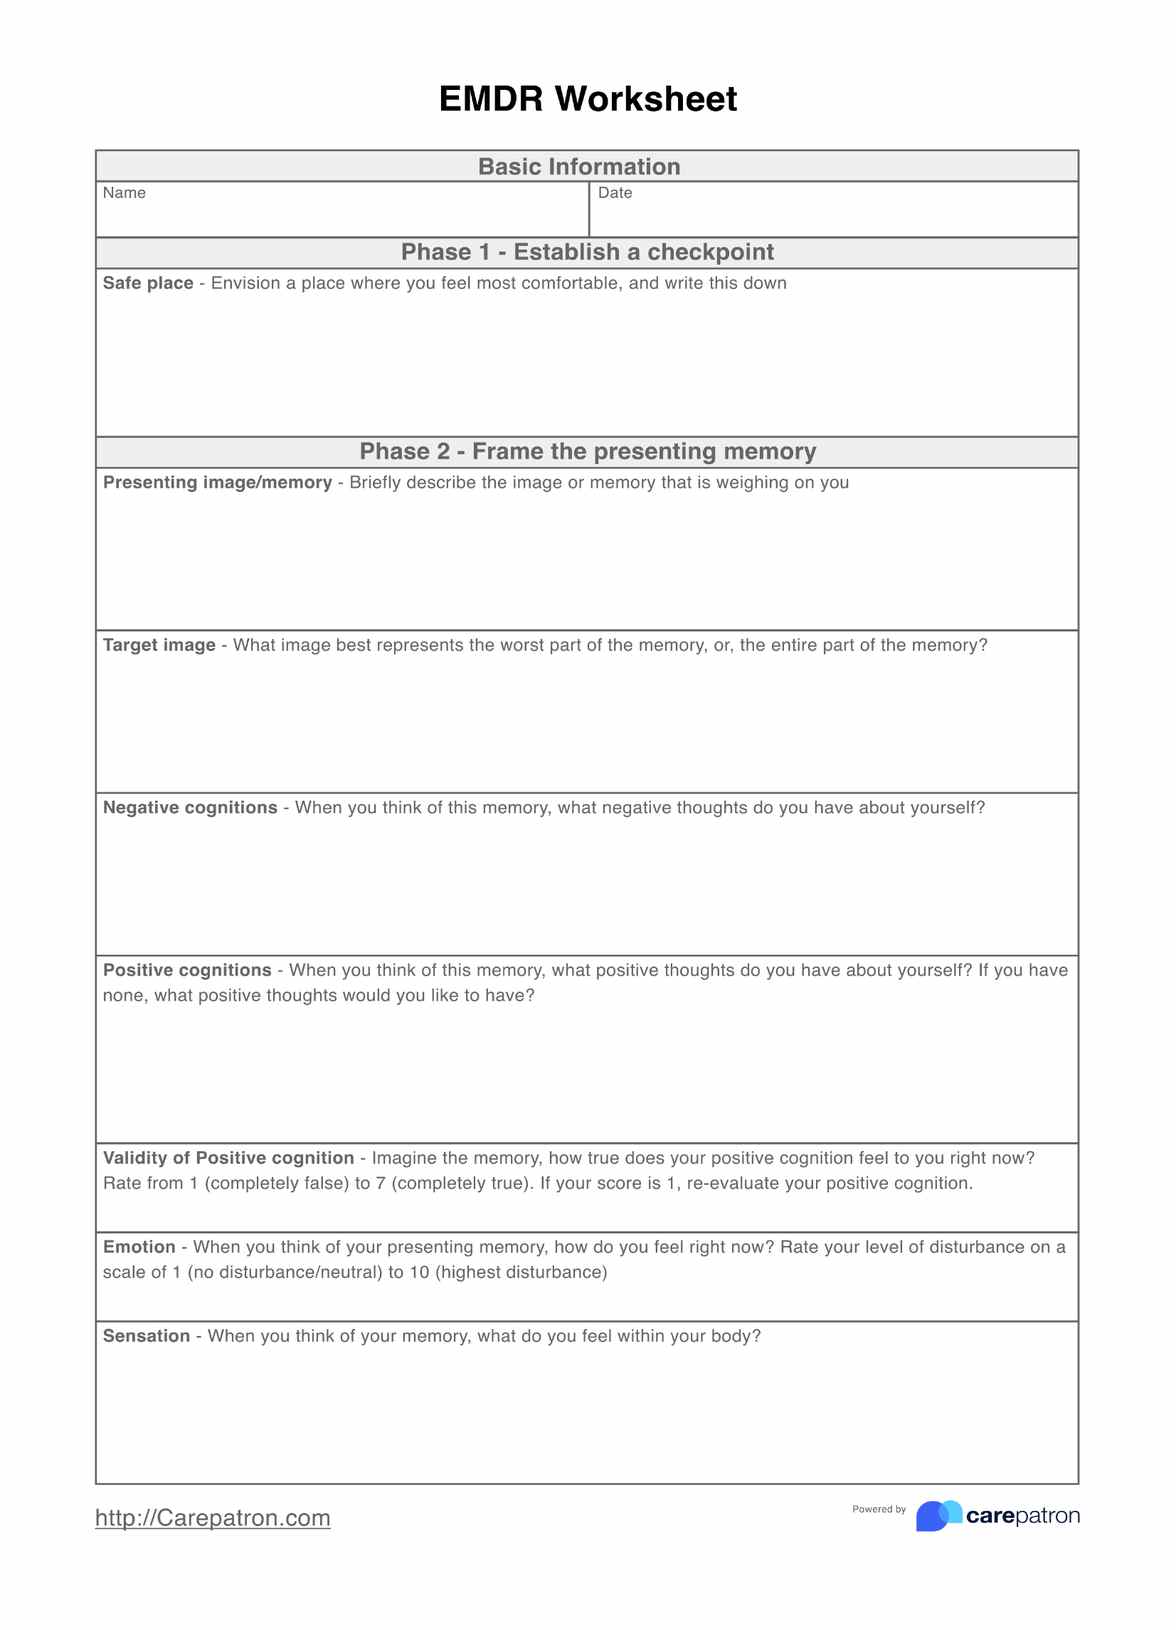 EMDR Worksheets PDF Example